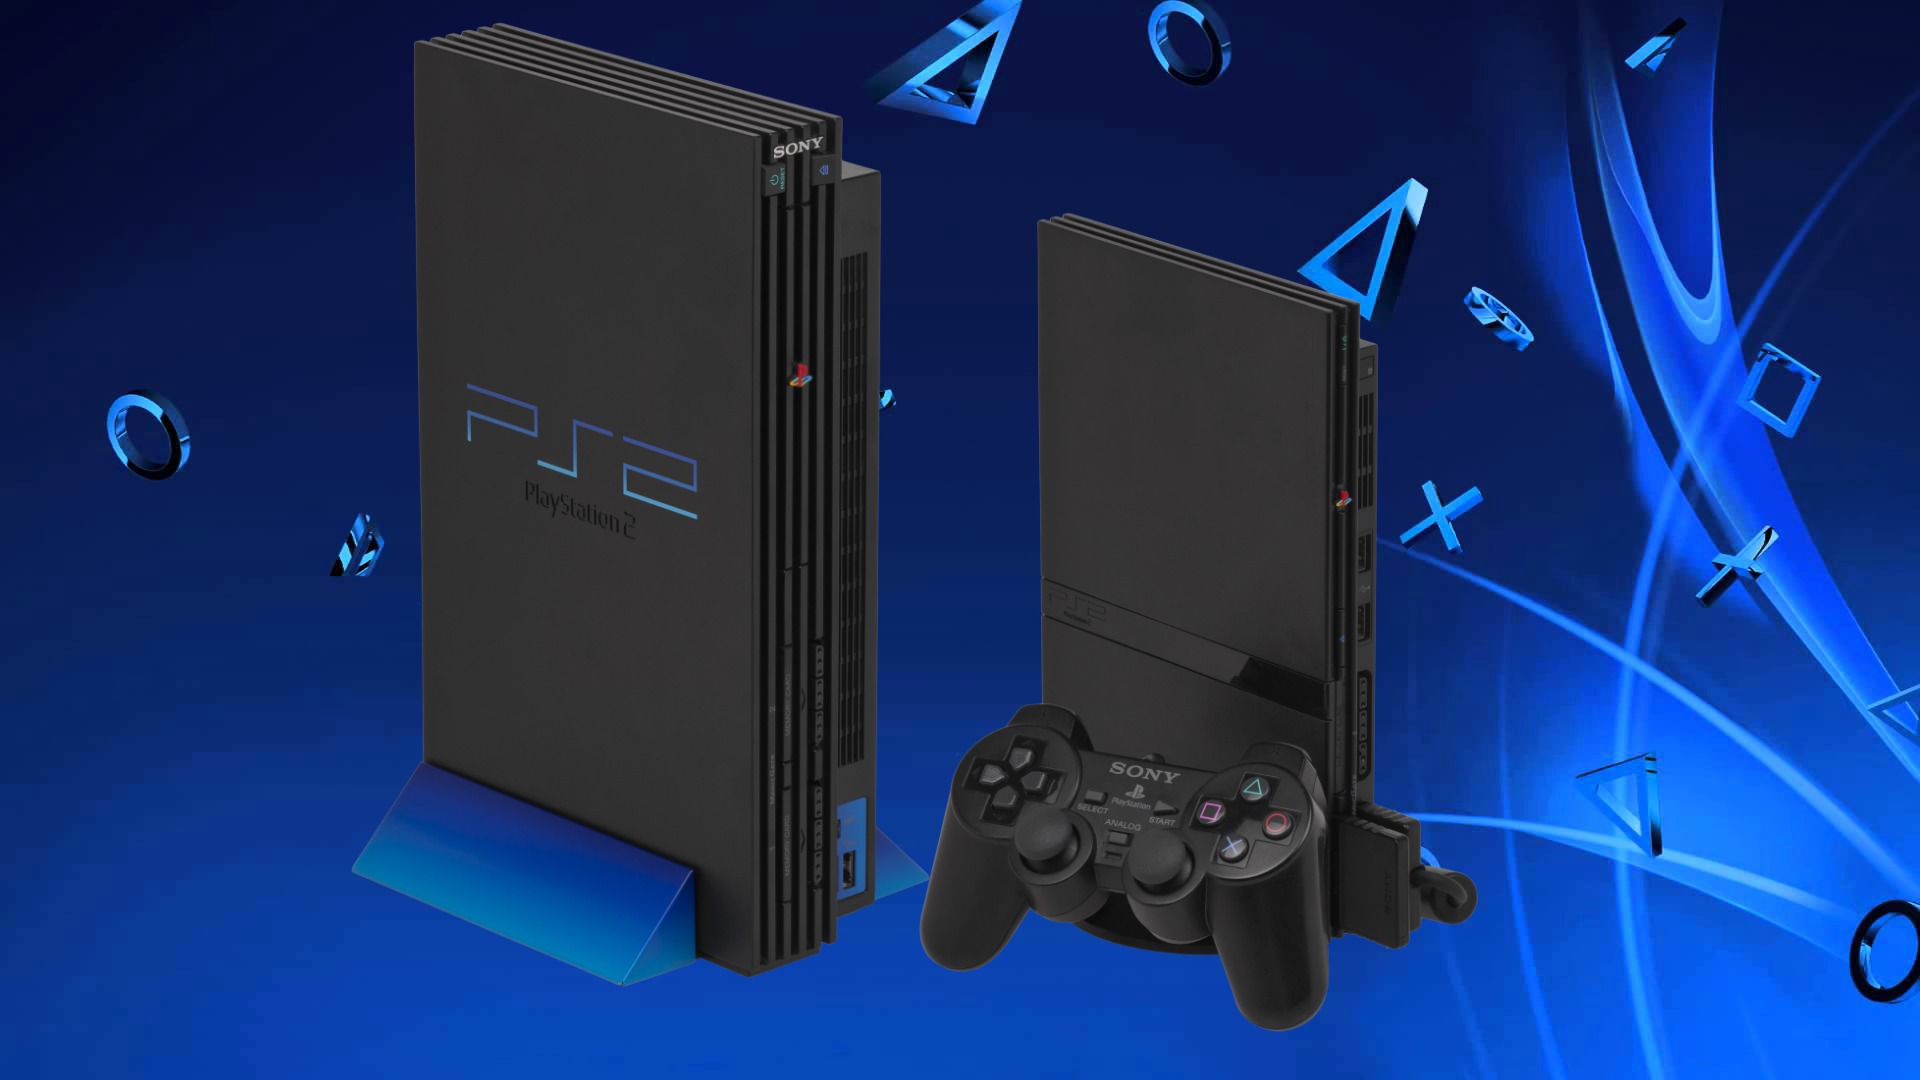 PlayStation 2 Forever  jogos ps2, jogos de playstation, playstation 2